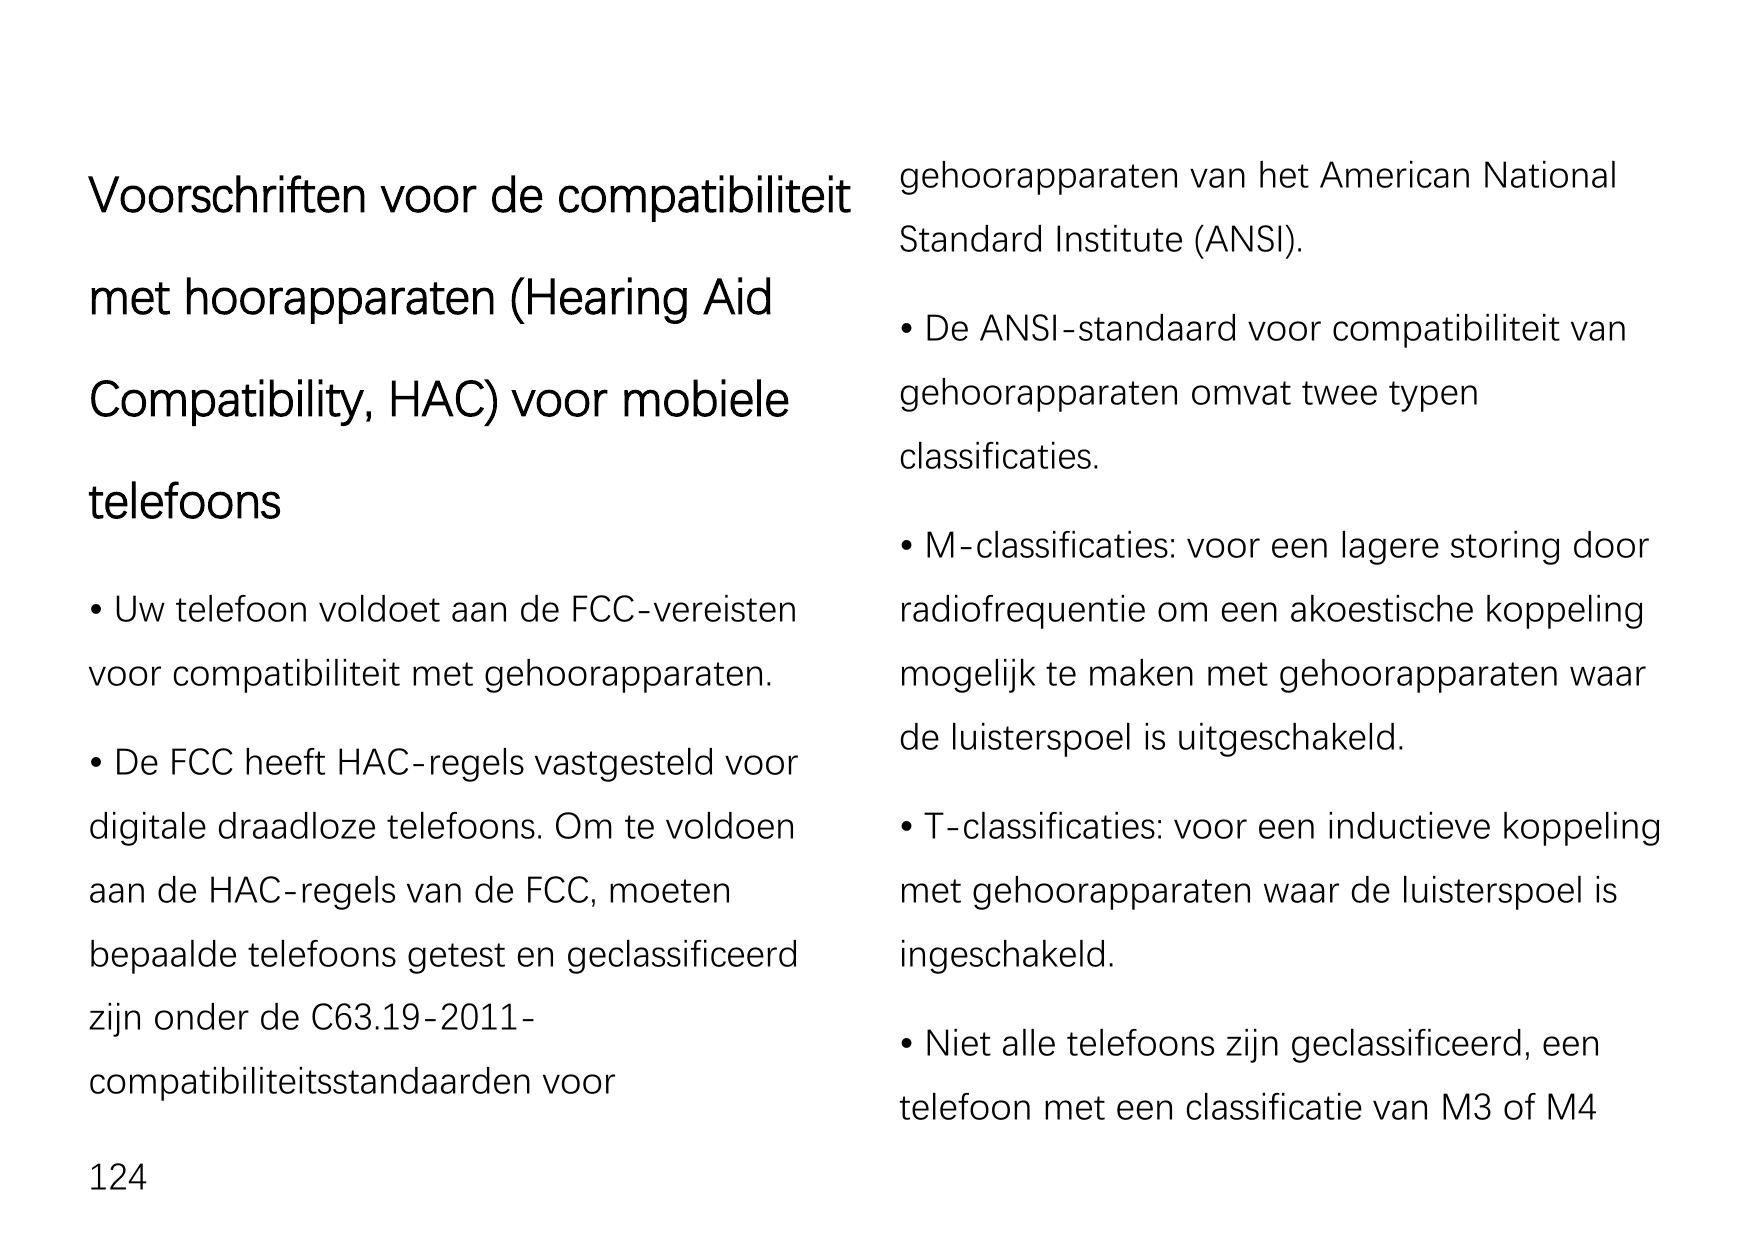 Voorschriften voor de compatibiliteitmet hoorapparaten (Hearing AidCompatibility, HAC) voor mobieletelefoonsgehoorapparaten van 